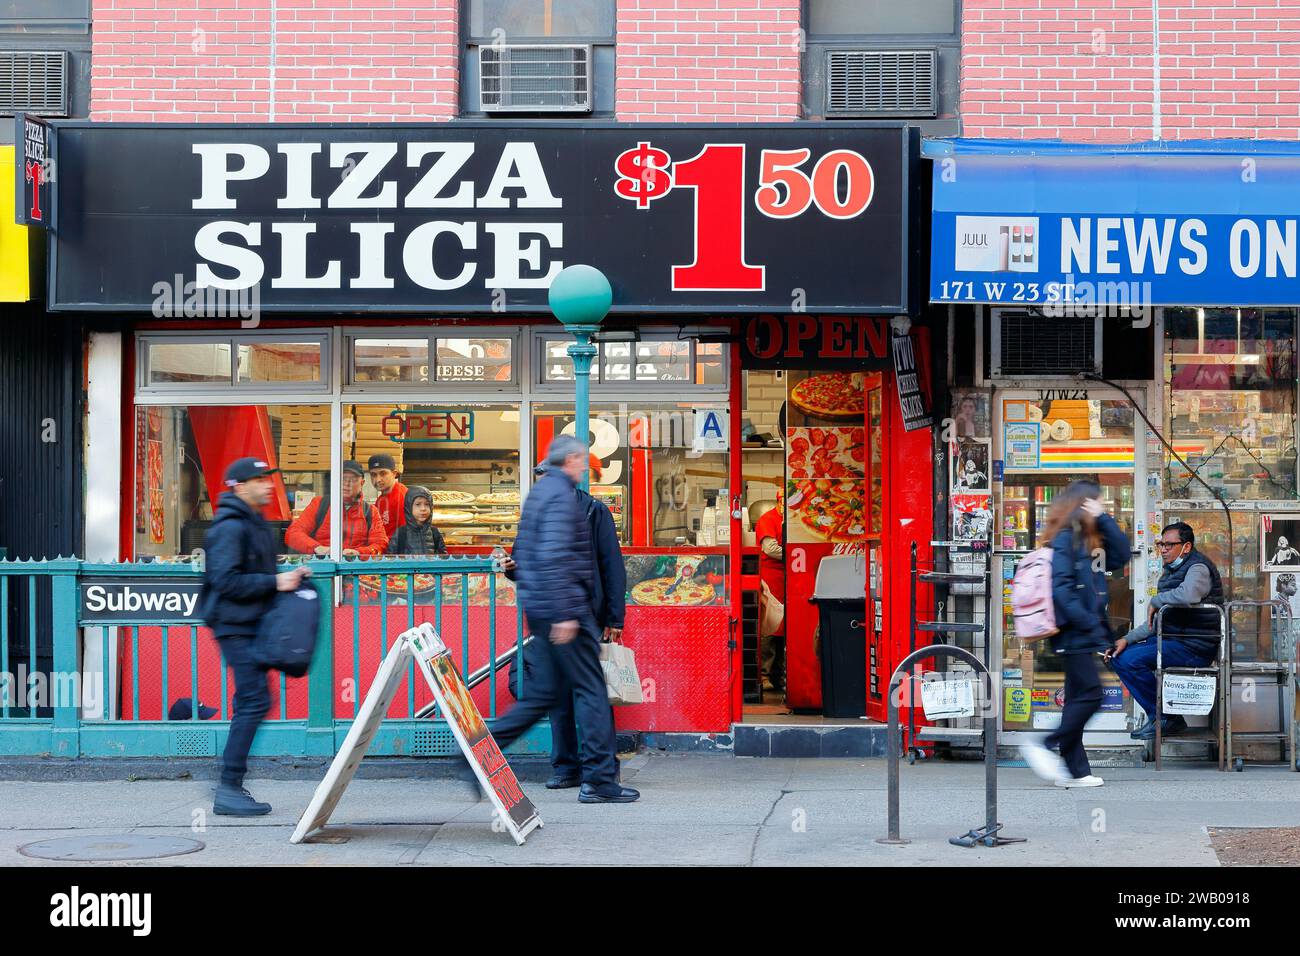 Una pizzeria da $1,50 vicino a una stazione della metropolitana e un'edicola nel quartiere Chelsea di New York Foto Stock